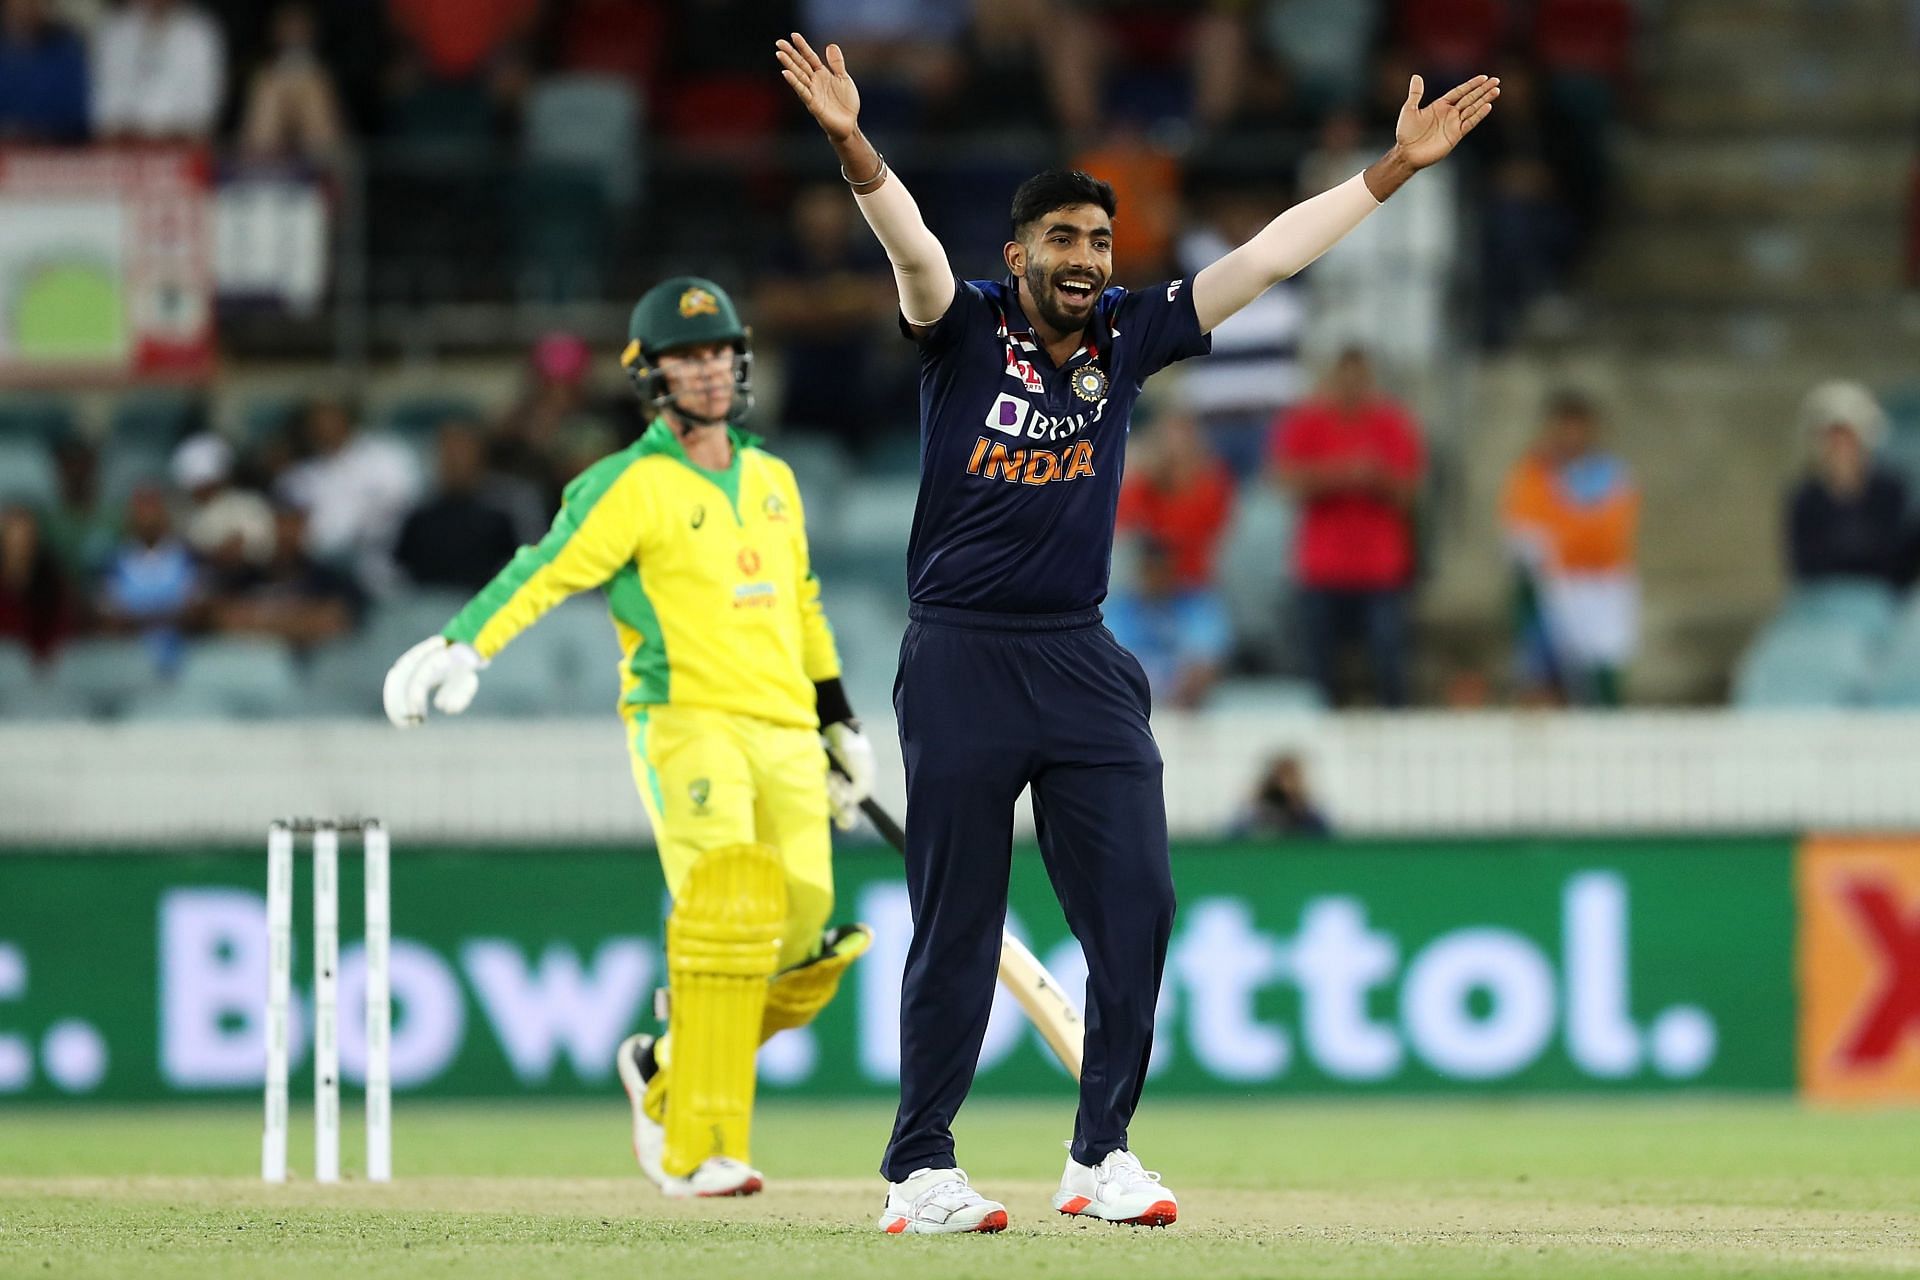 Australia v India - ODI Game 3